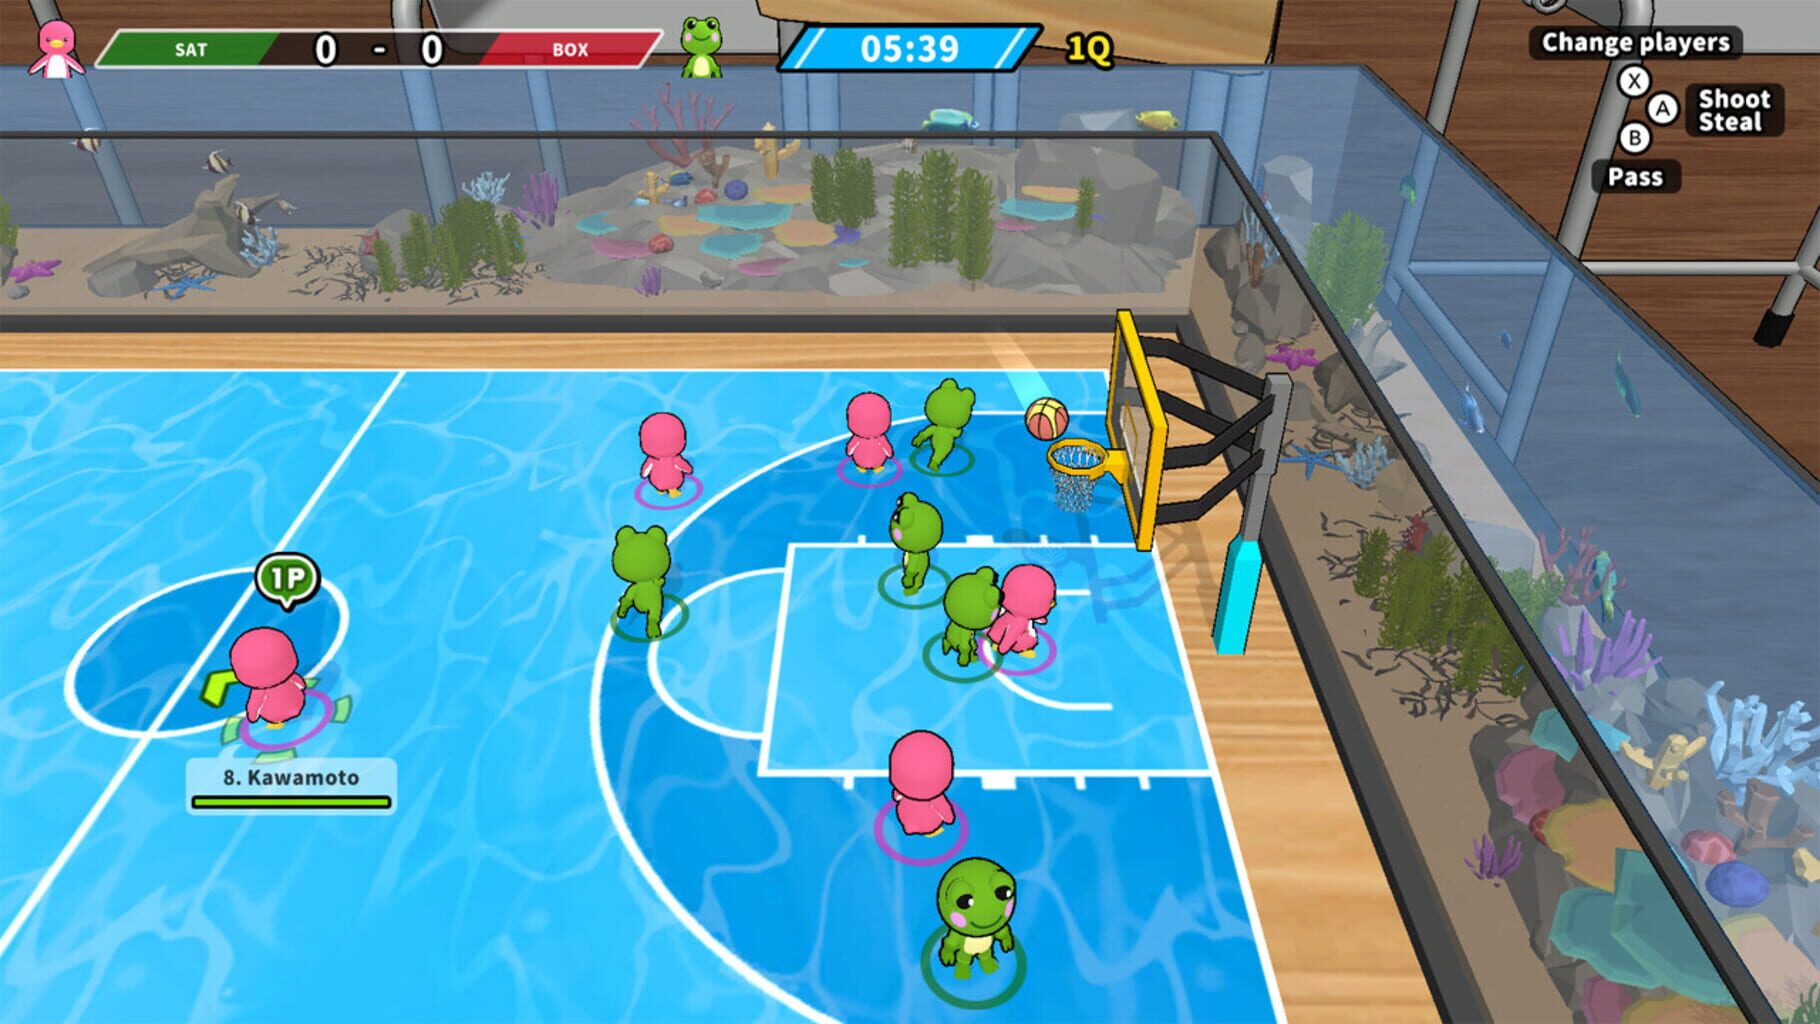 Desktop Basketball 2 screenshot